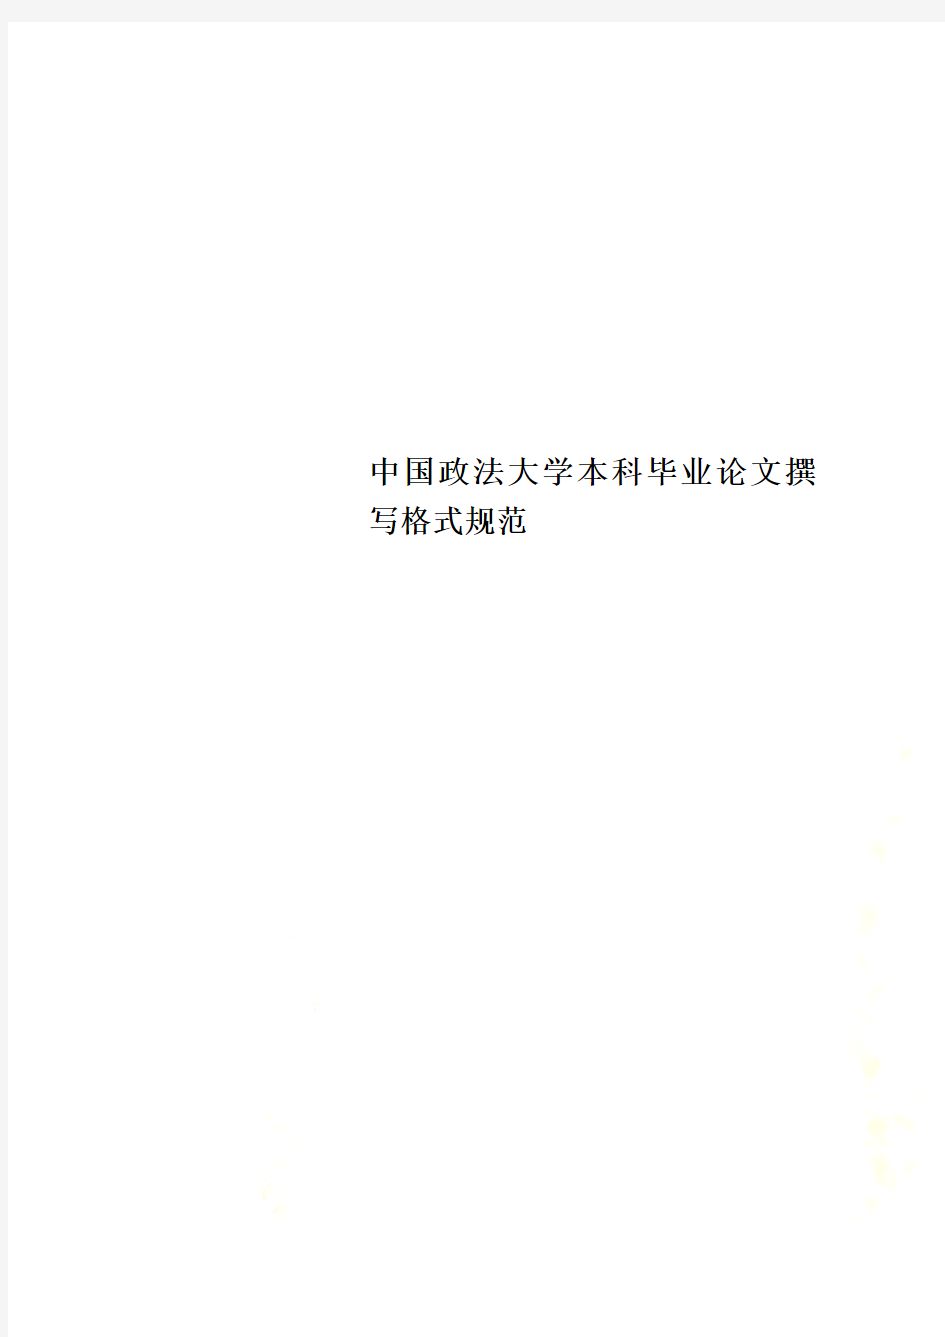 中国政法大学本科毕业论文撰写格式规范